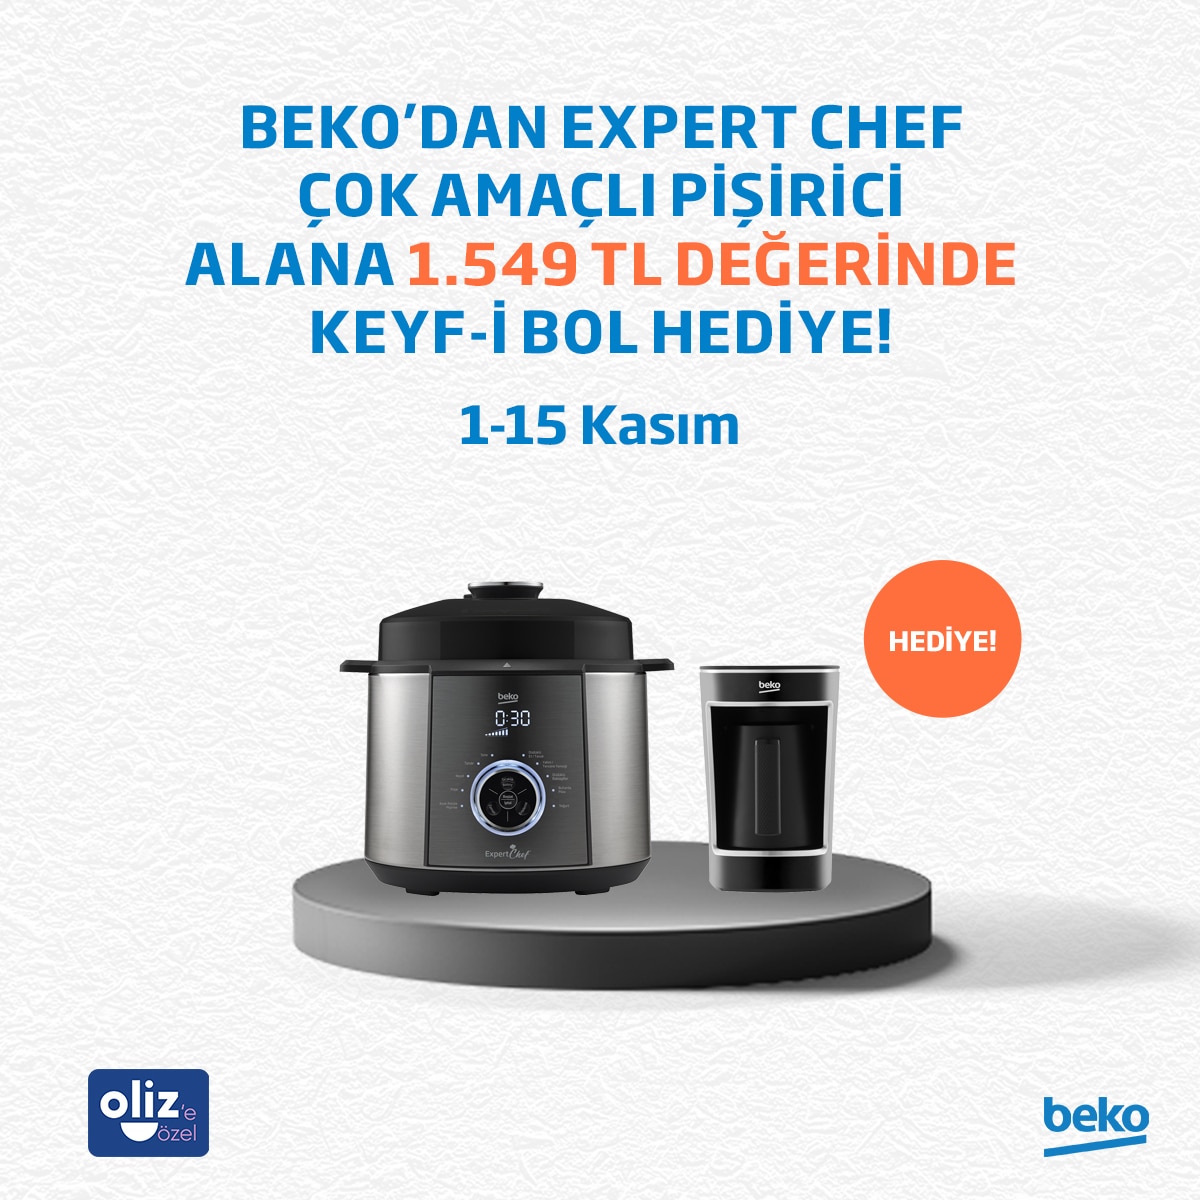 Beko’dan Expert Chef Çok Amaçlı Pişirici Alana 1.549 TL Değerinde KEYF-İ BOL Hediye!